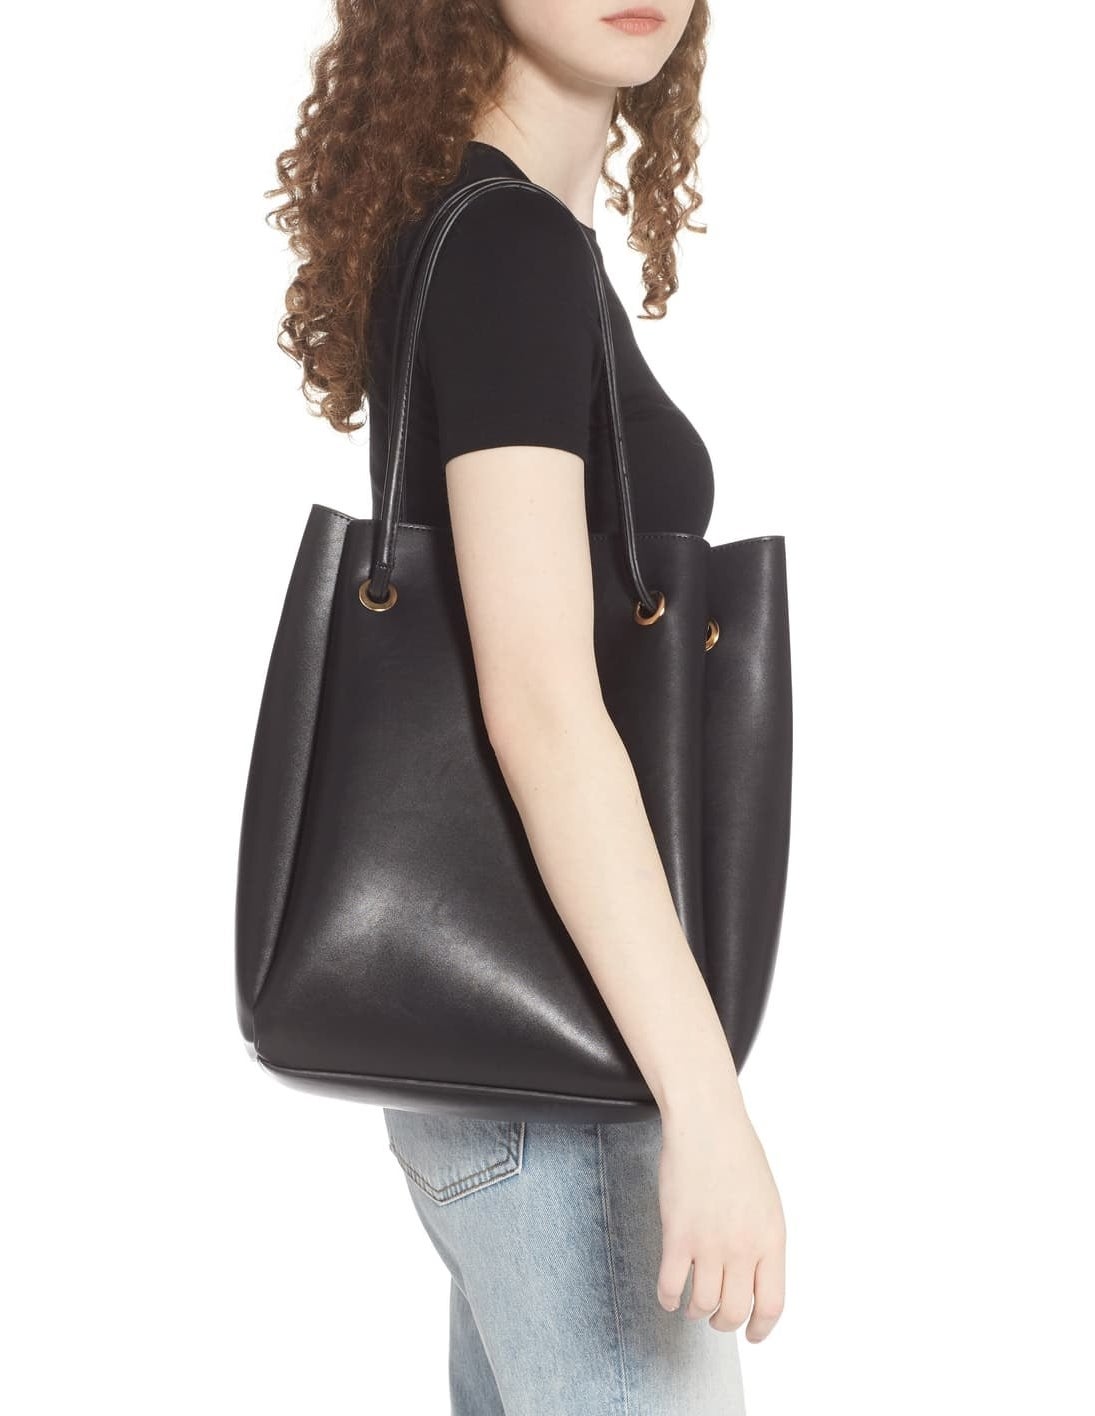 model carrying black tote bag